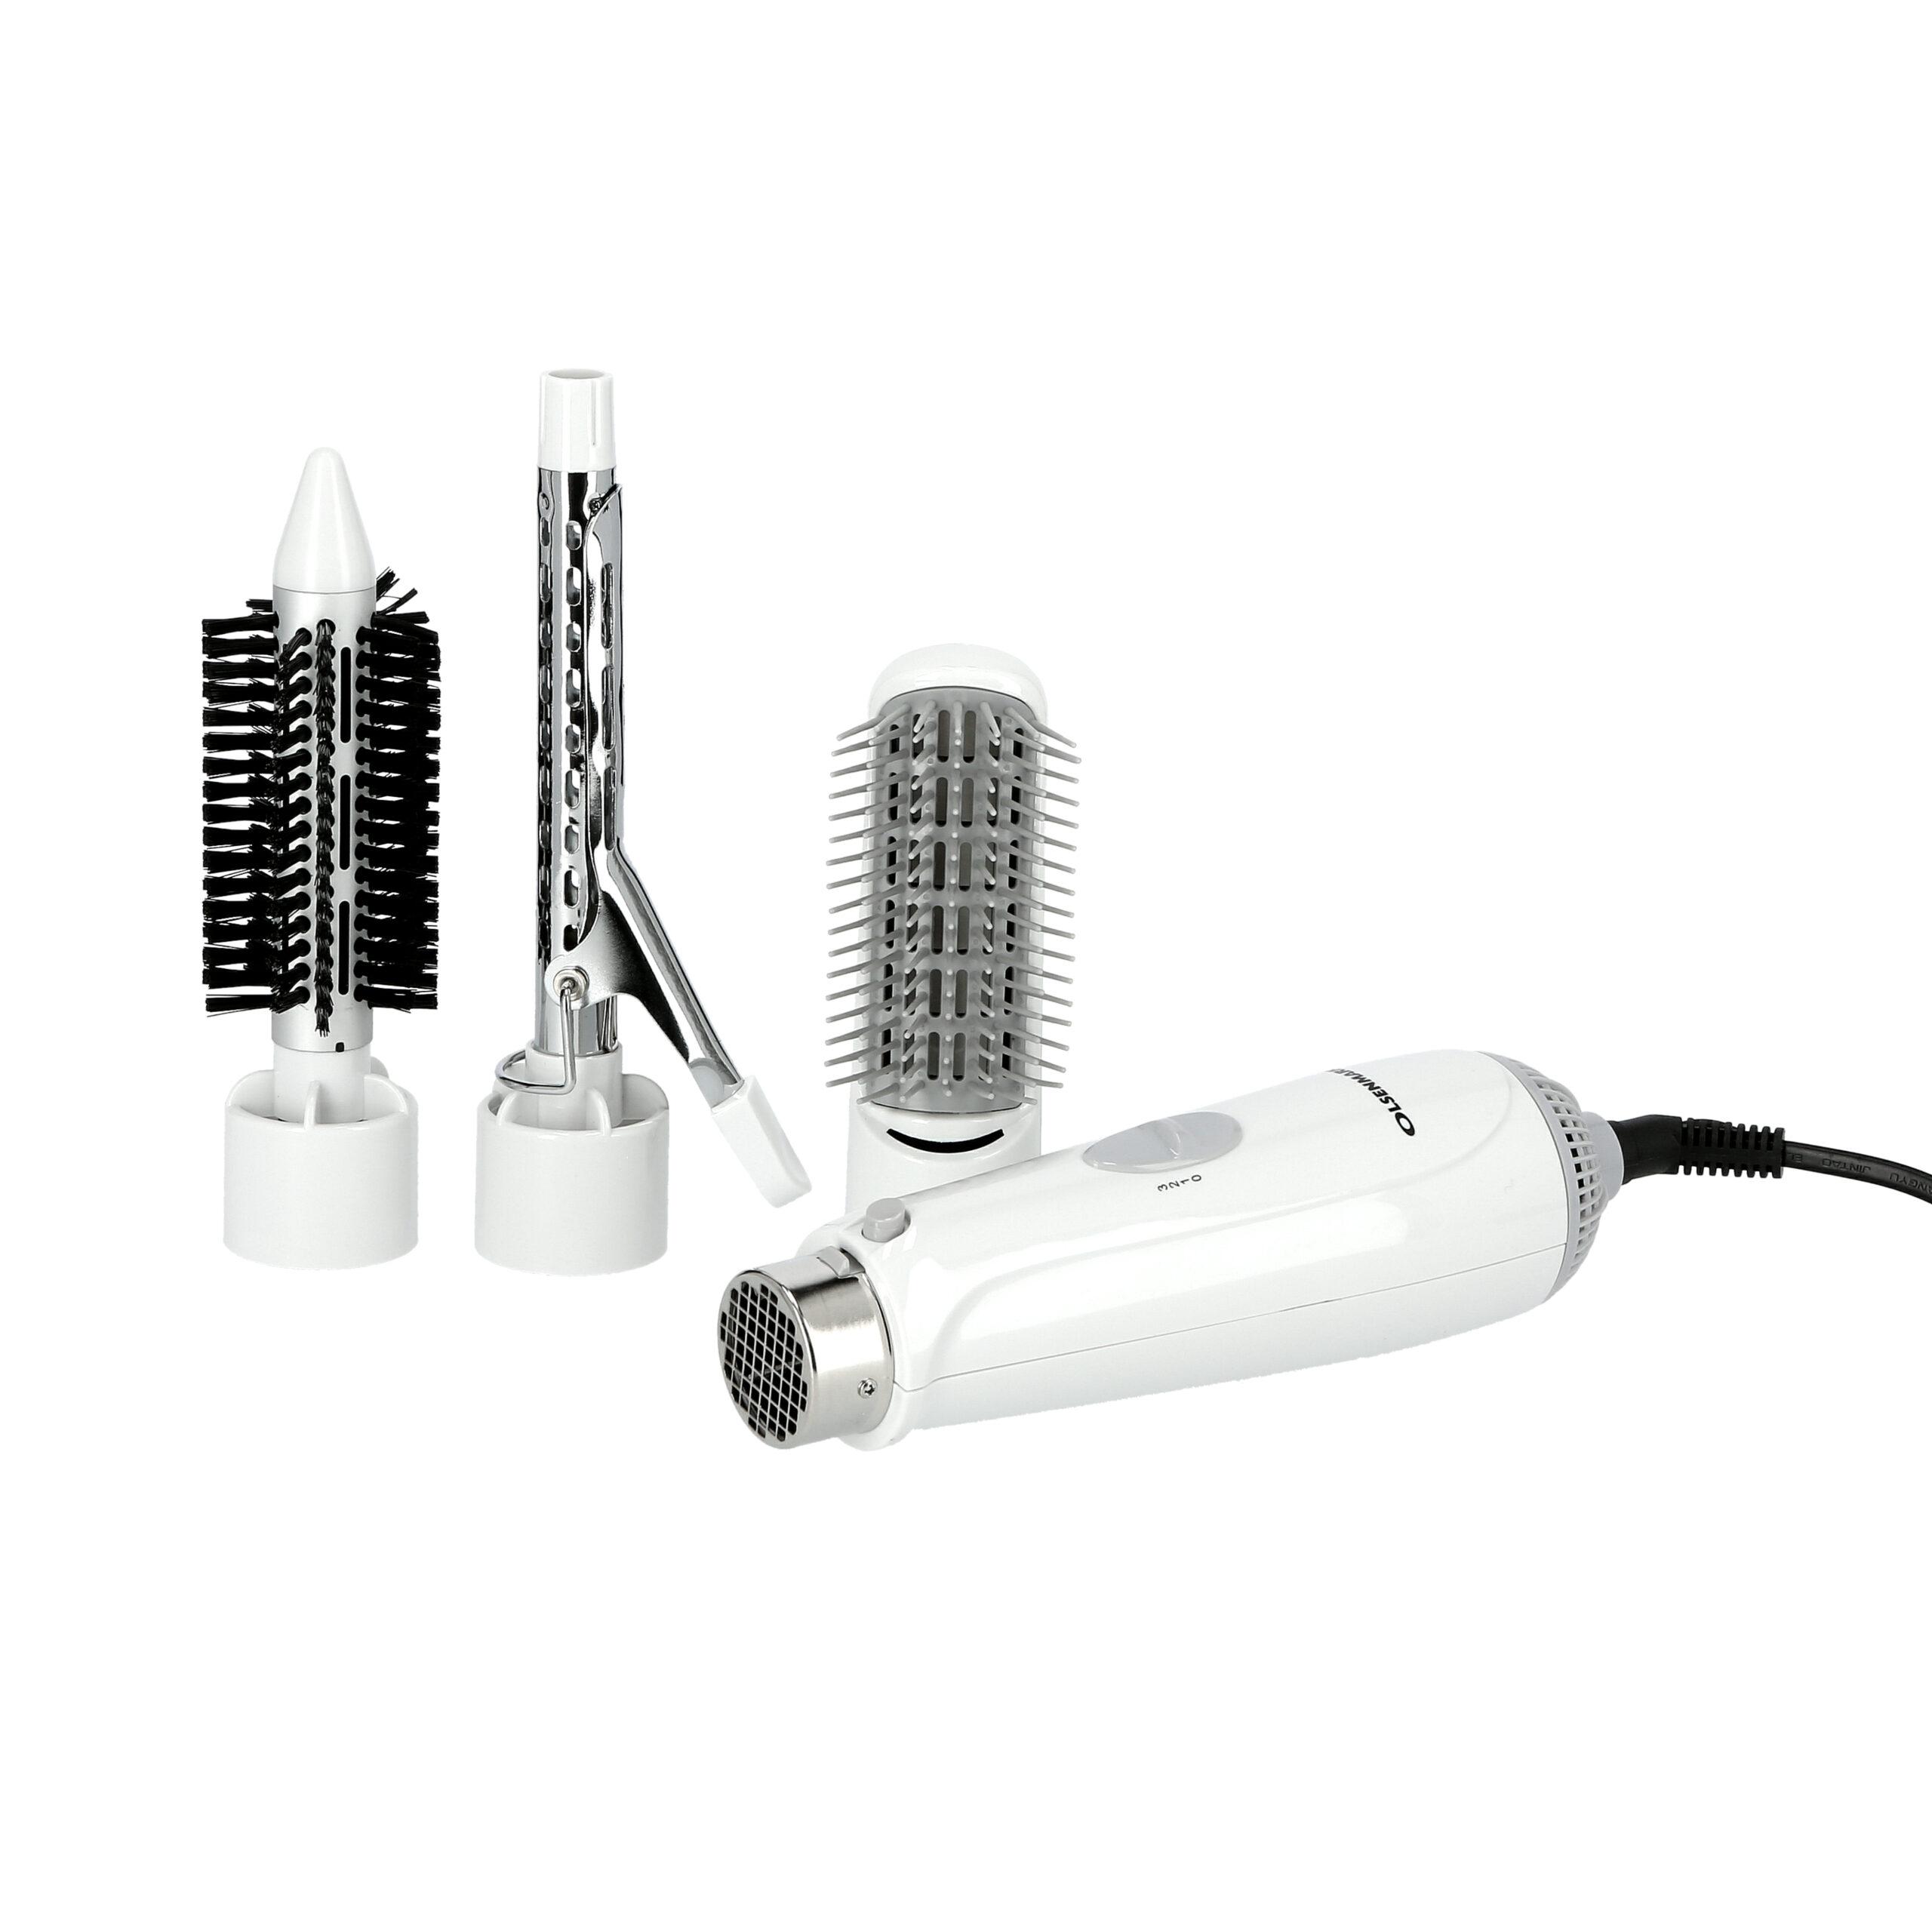 مجموعة تصفيف الشعر 4في1 750W لون أبيض 4In1 Hot Air Styler, Brush, Volumizer, Curler - Hot Air Brush